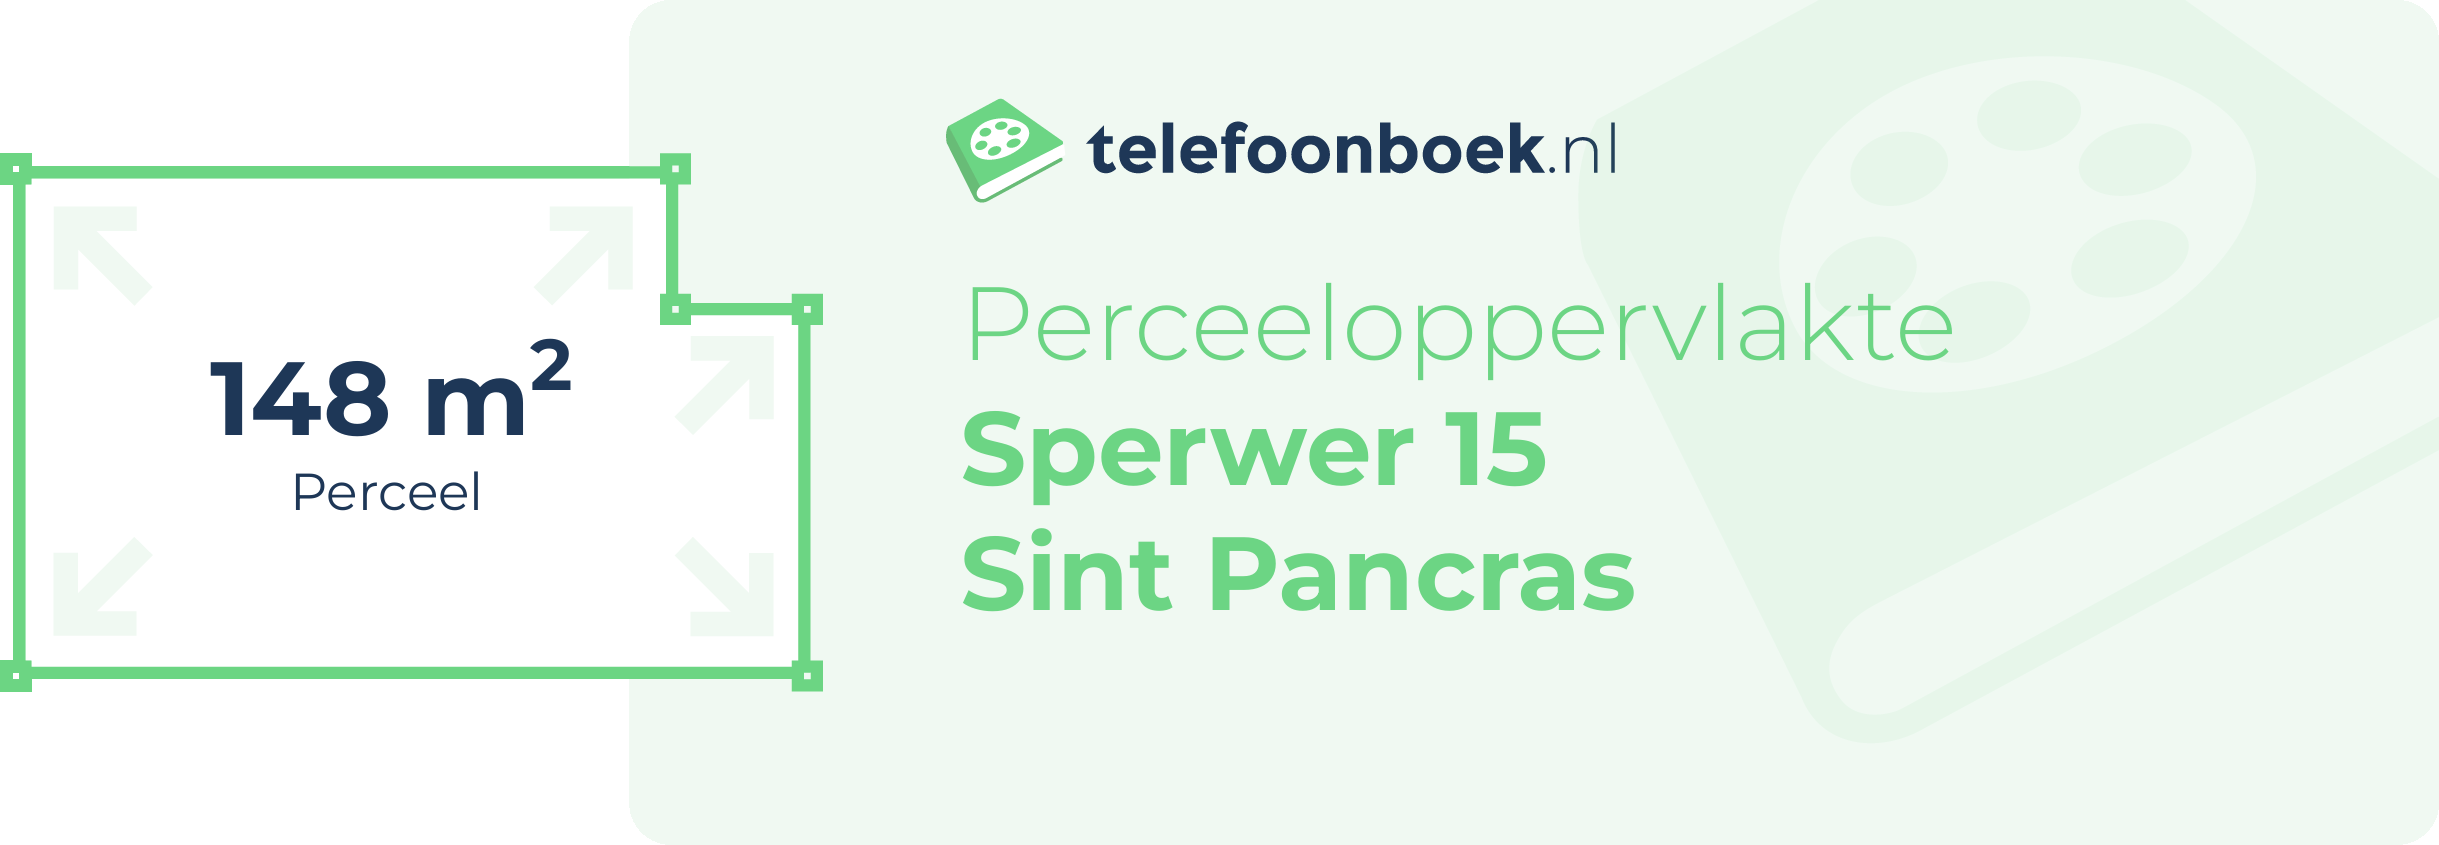 Perceeloppervlakte Sperwer 15 Sint Pancras